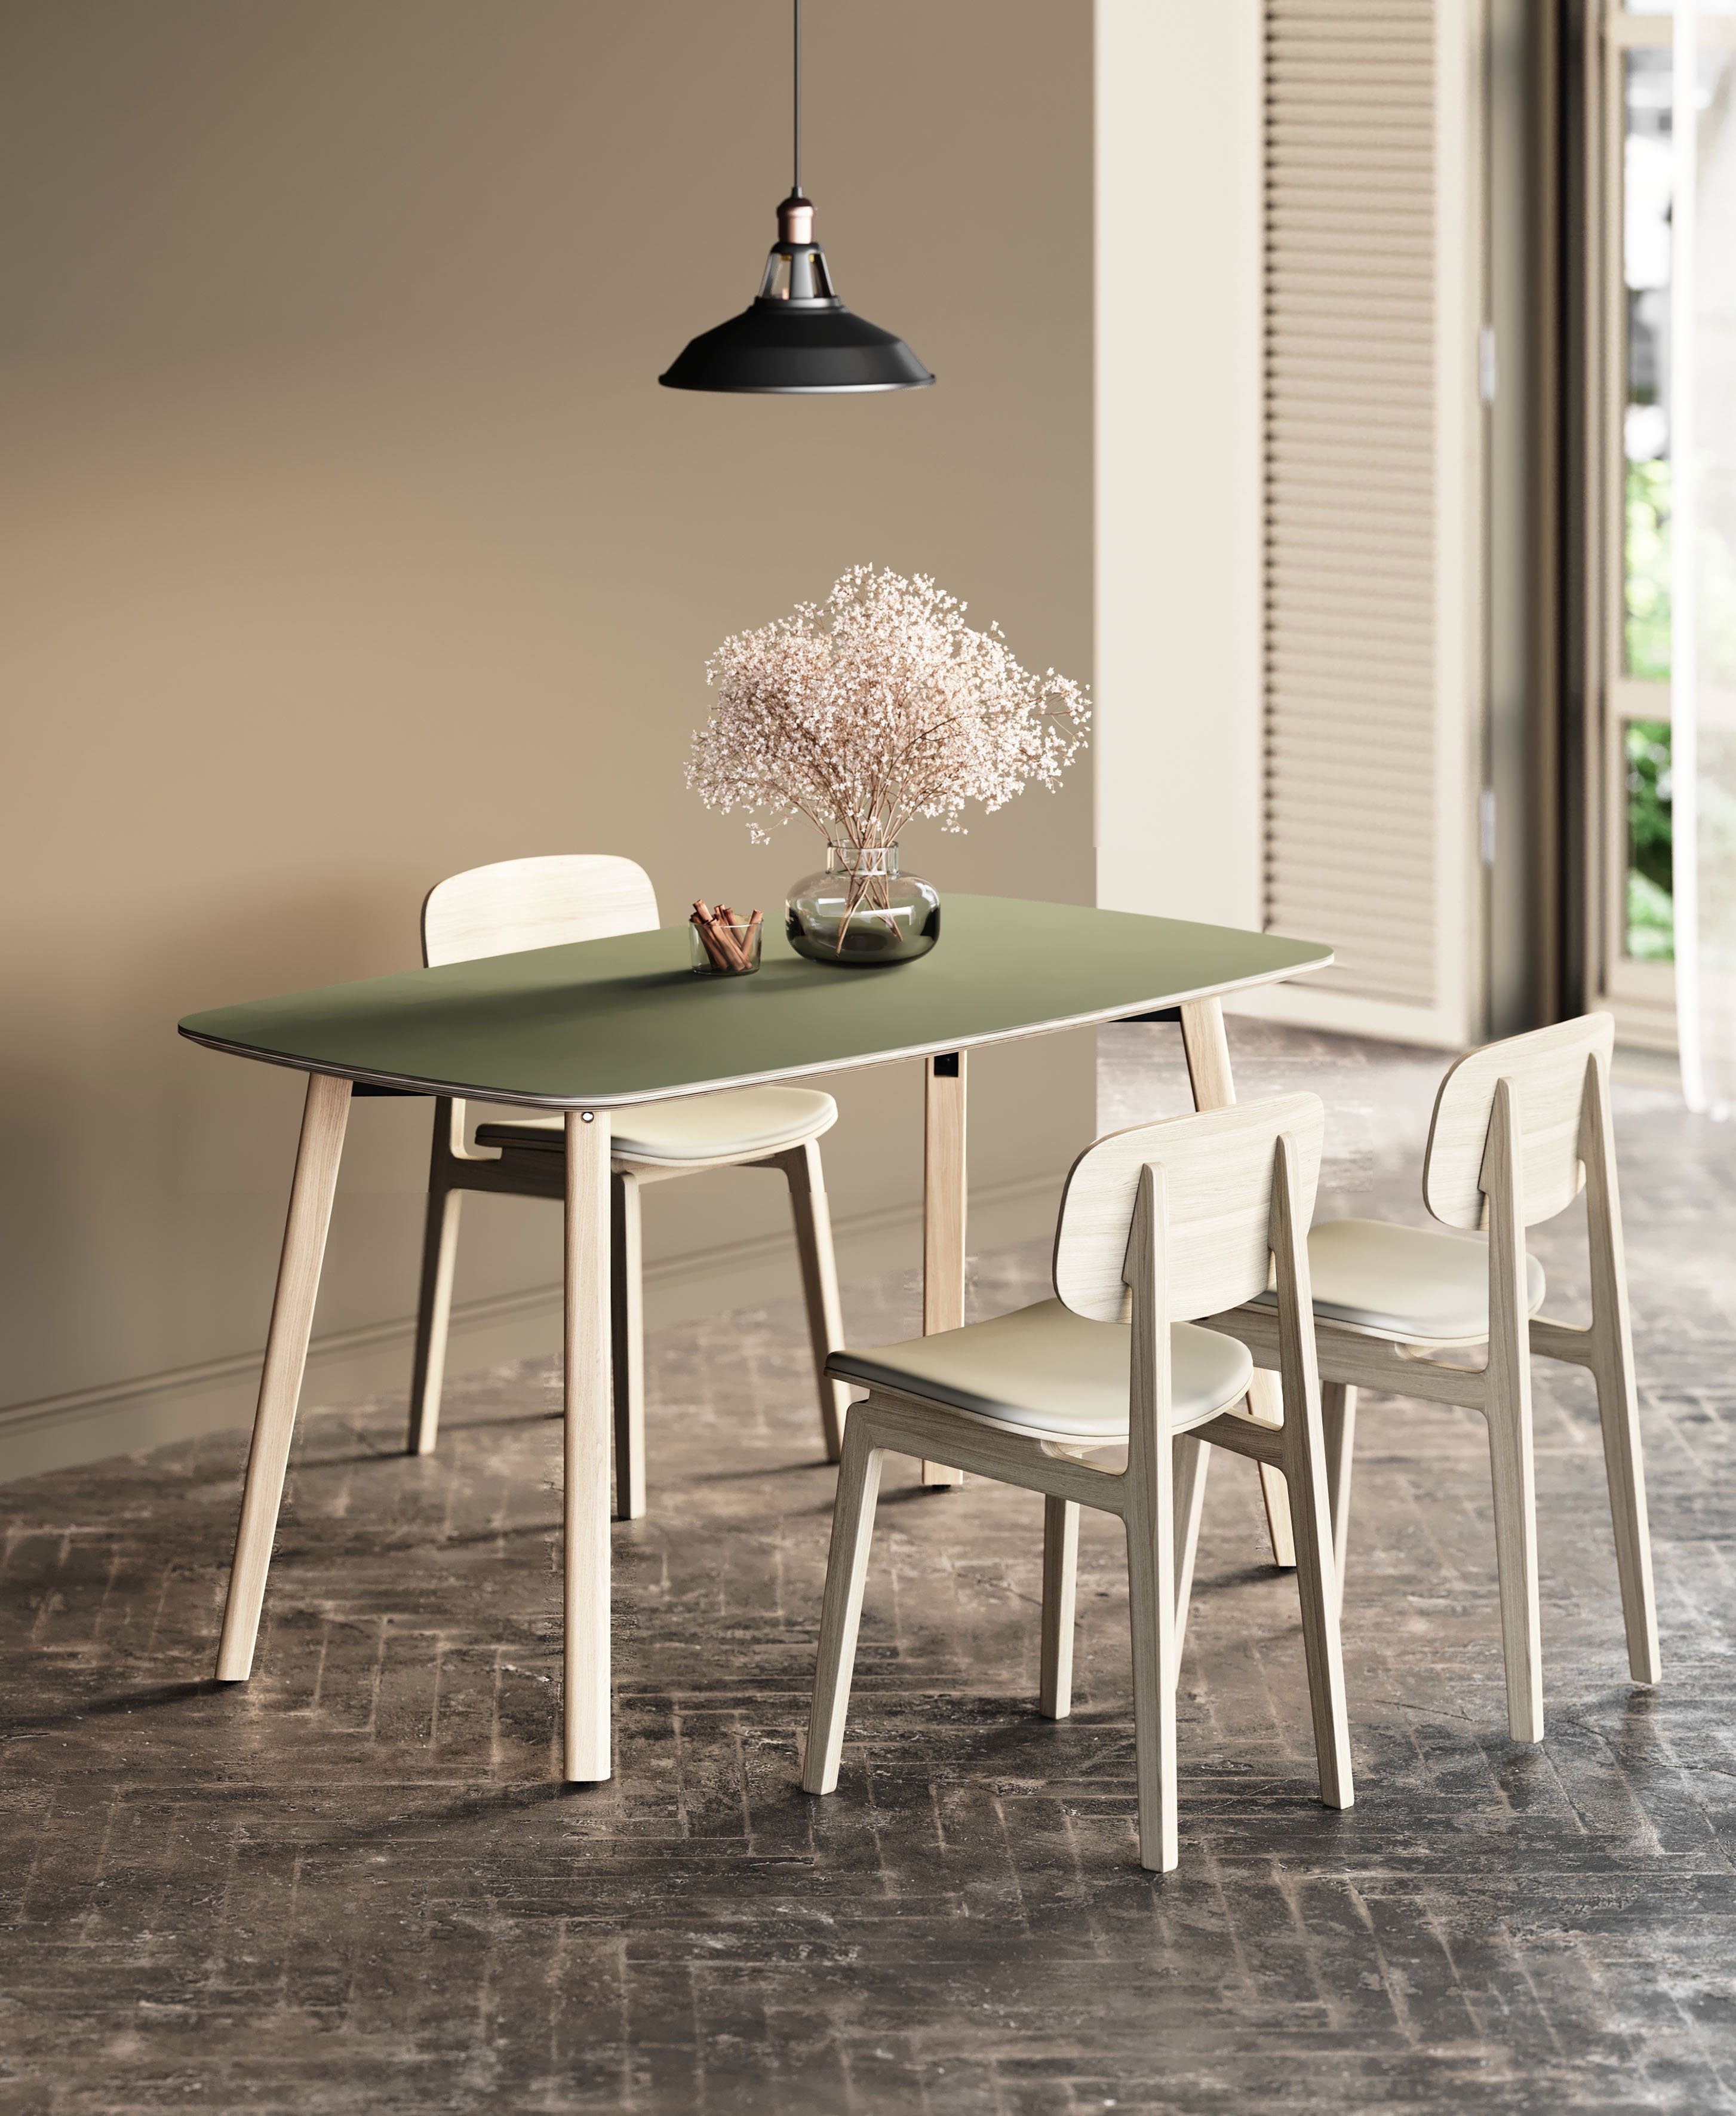 OTTO products Esstisch Tables, Füße massiv, mit Eiche schöner Beschichtung aus olive/eiche Linoleum natur